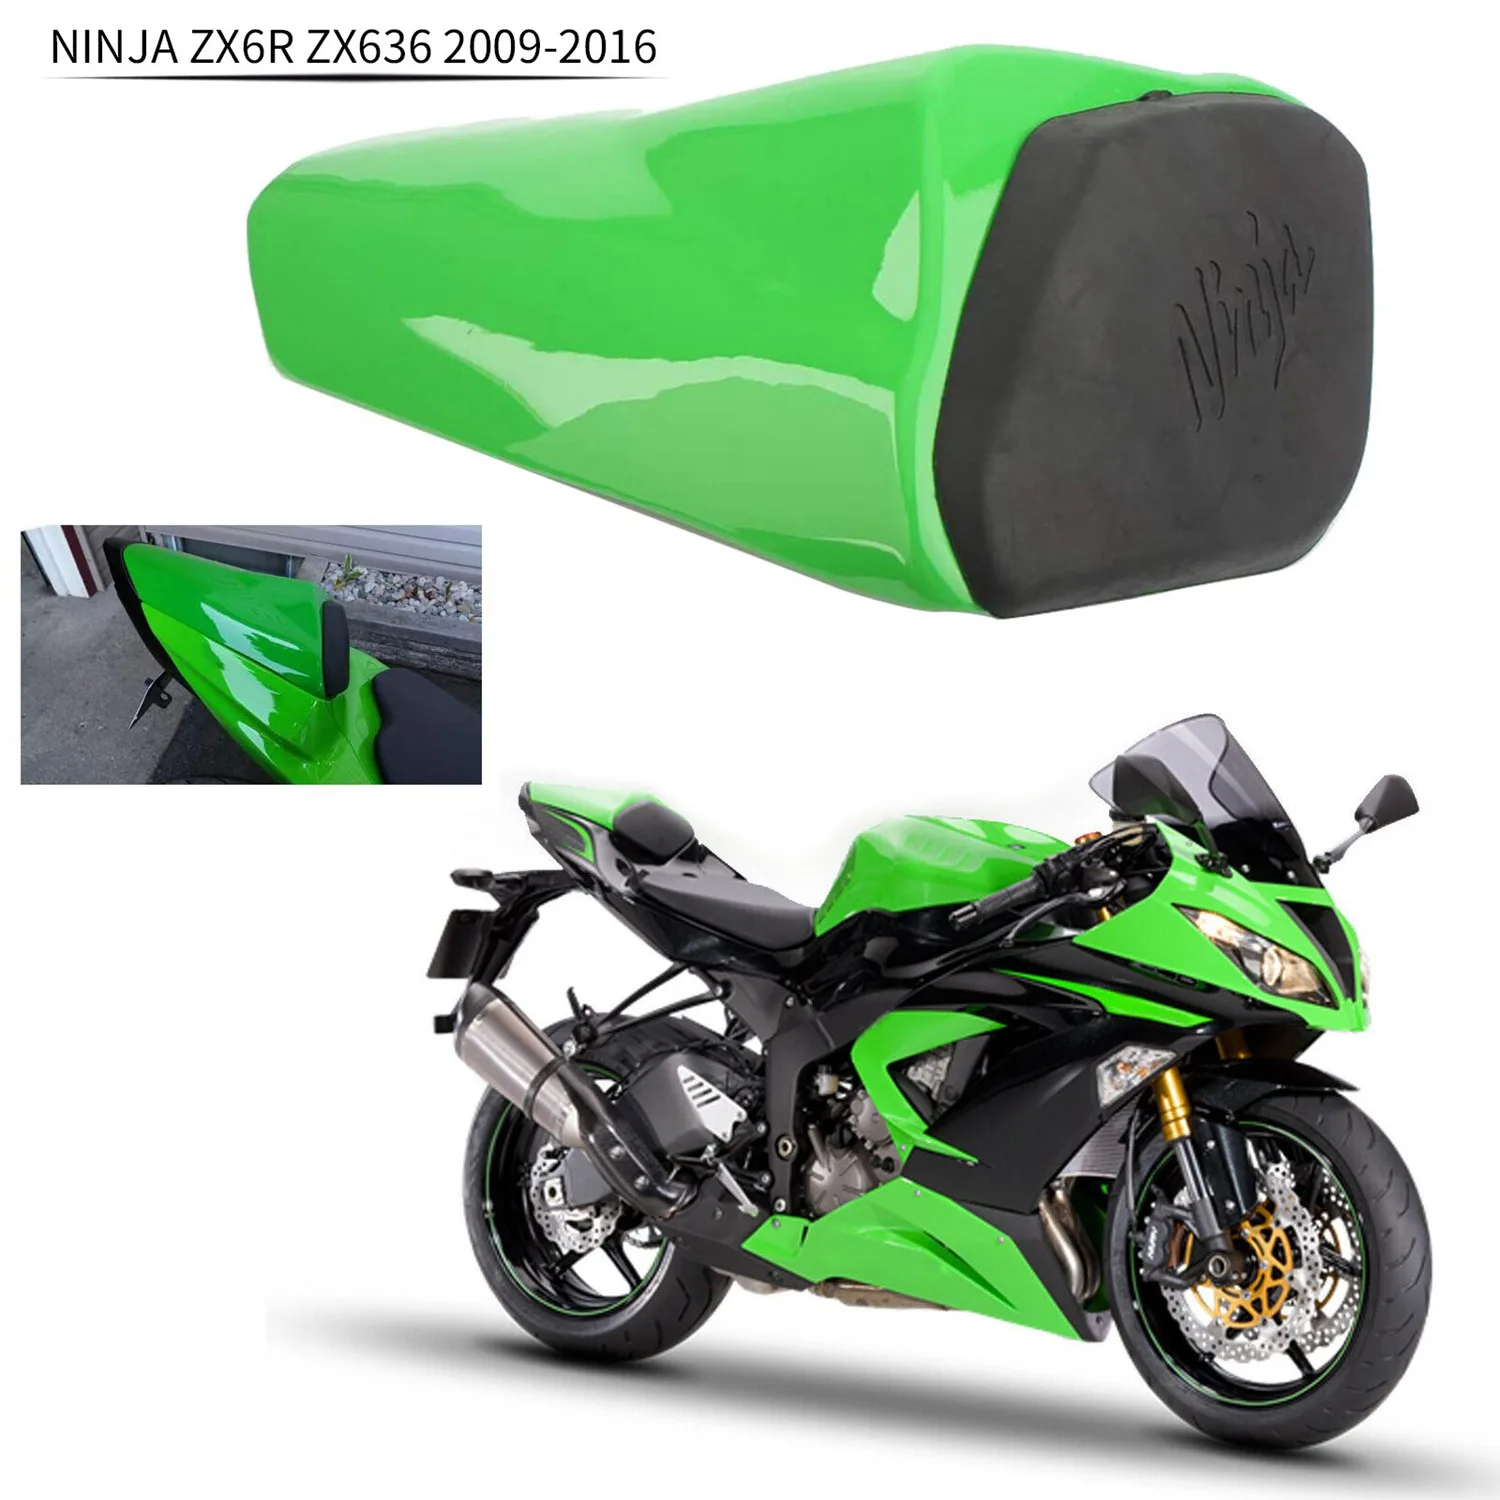 

Мотоциклетный задний пассажирский заднее сиденье клобук обтекатель Крышка для Kawasaki NINJA ZX6R ZX636 2009-2016